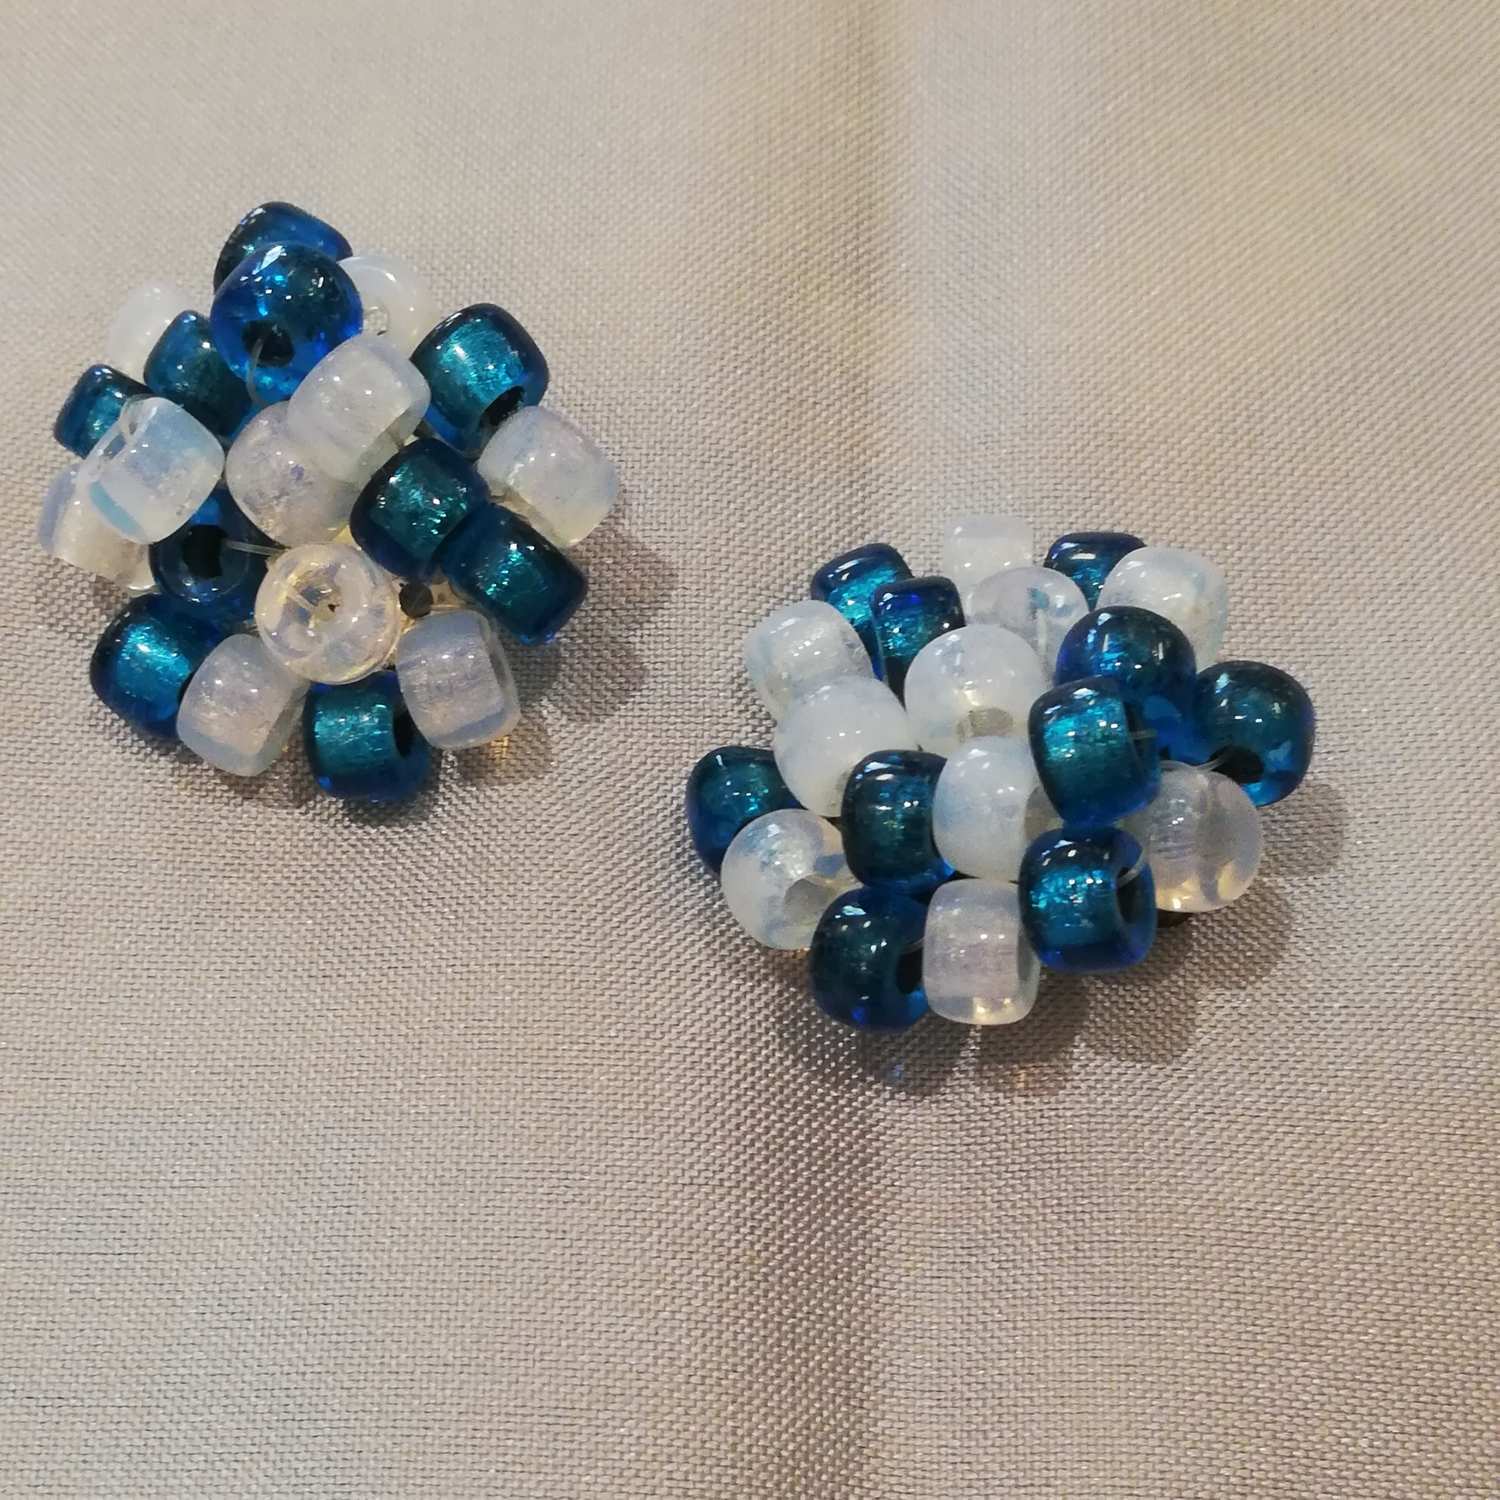 Vintage retro smycke bijouteri örhänge clips turkos och vita trädda pärlor